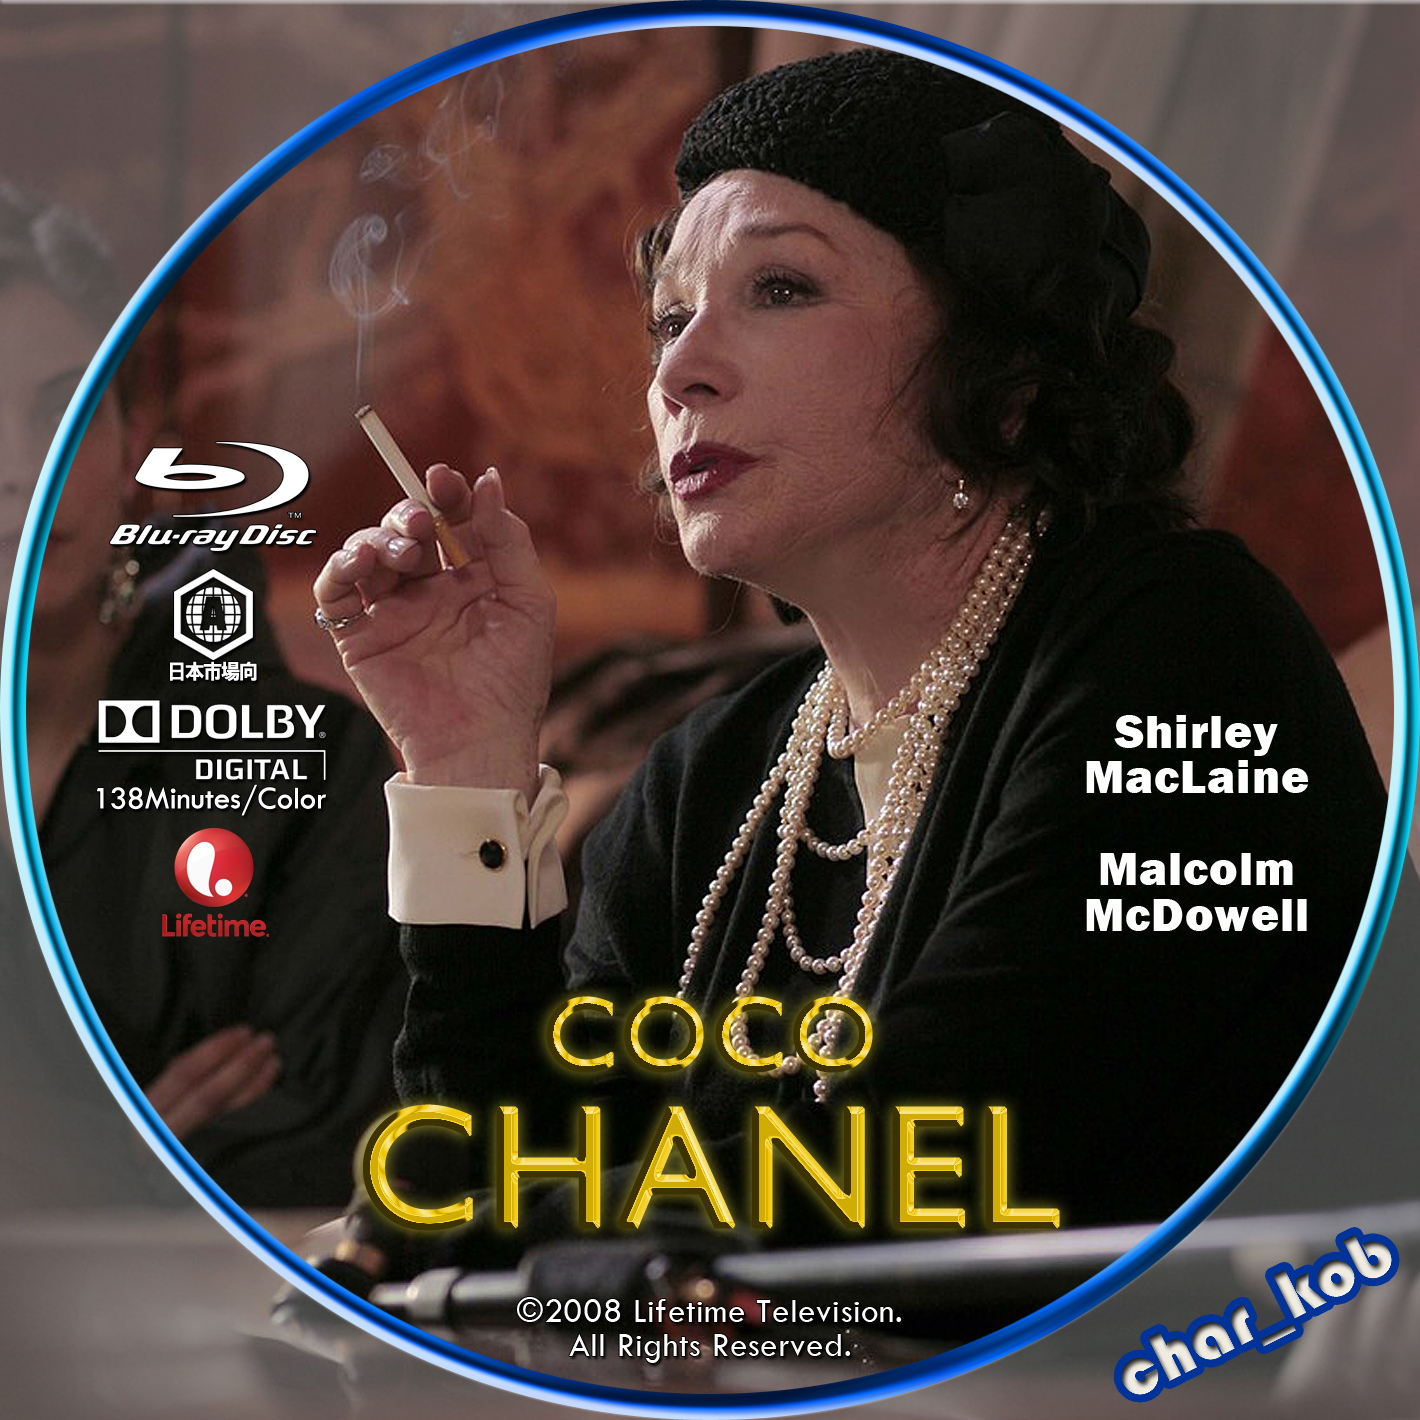 自作DVDラベル公開サイト Char_Kob's Custom DVD Label